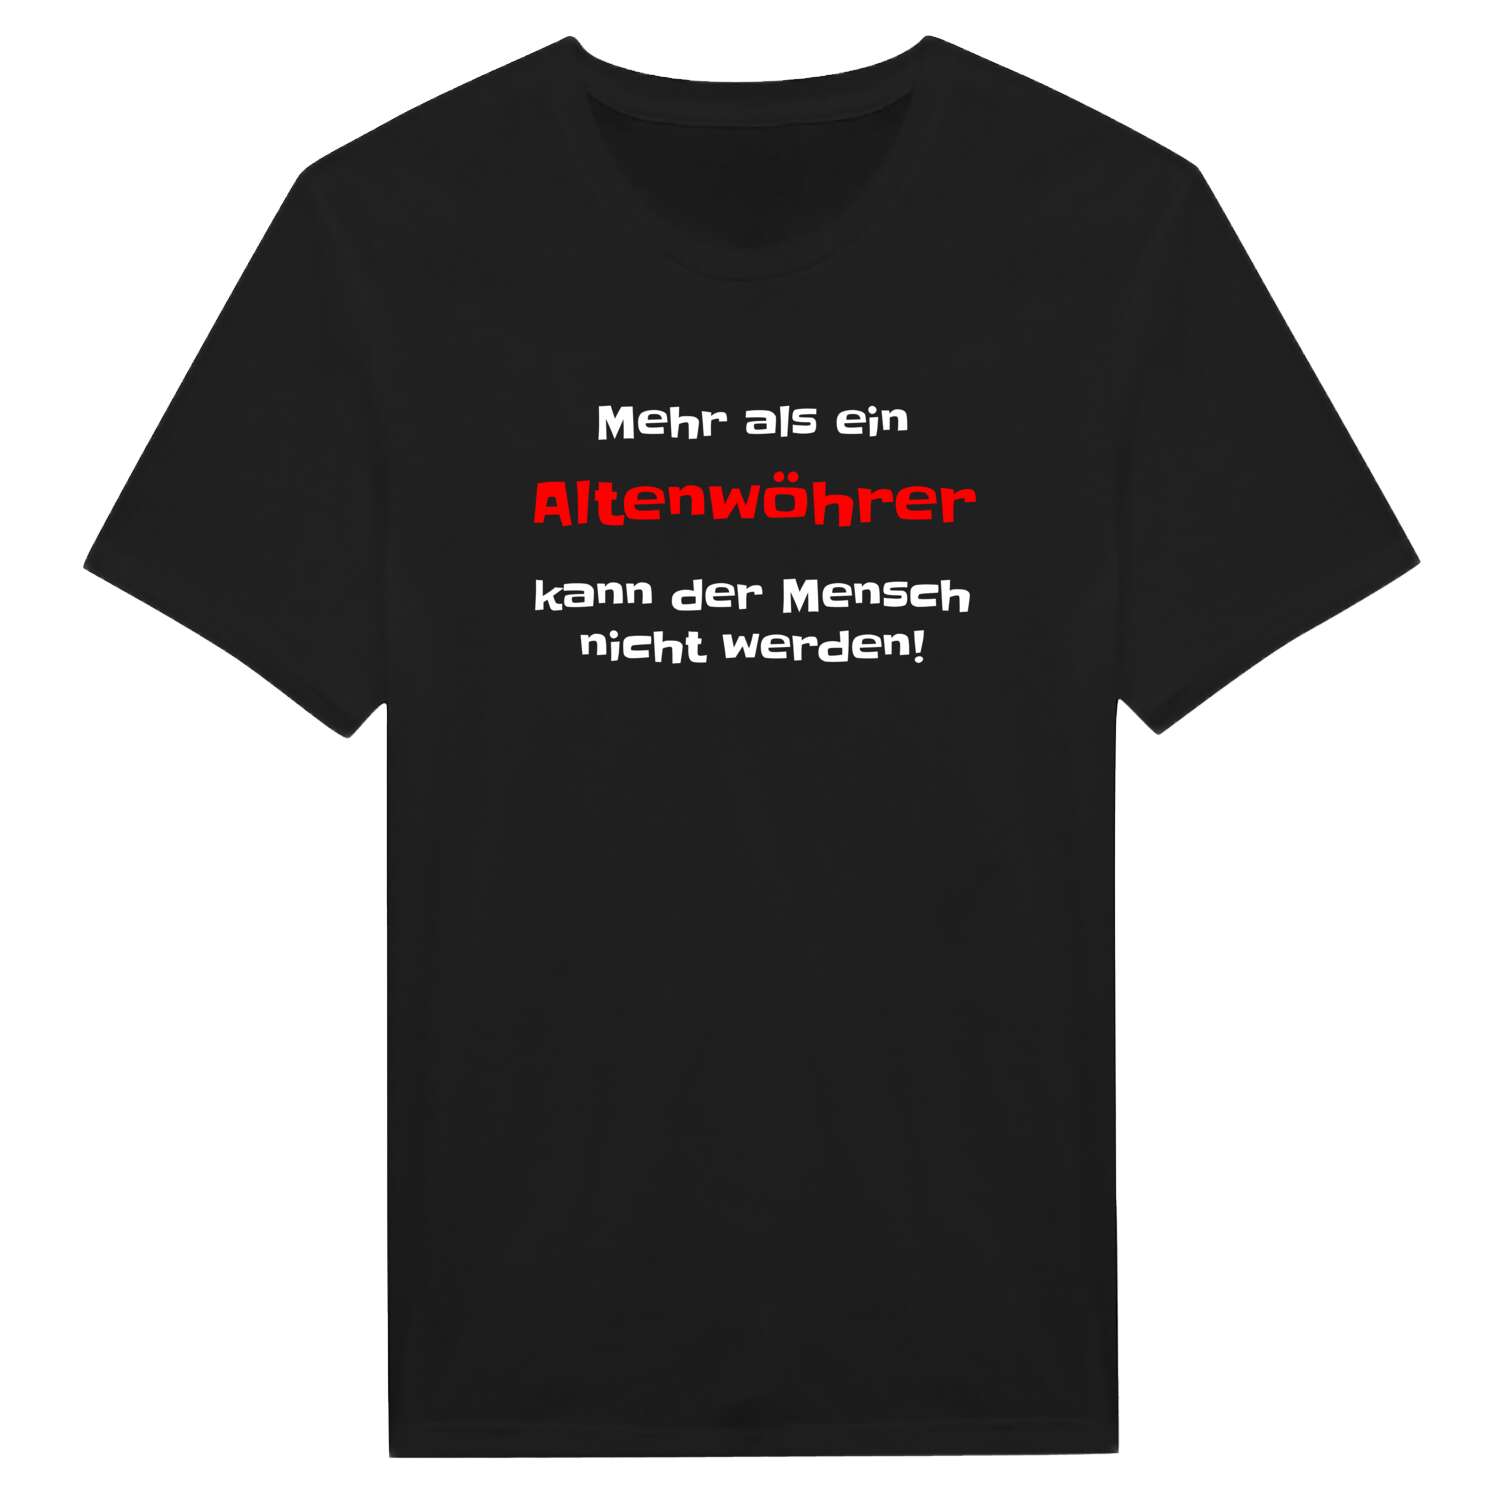 Altenwöhr T-Shirt »Mehr als ein«